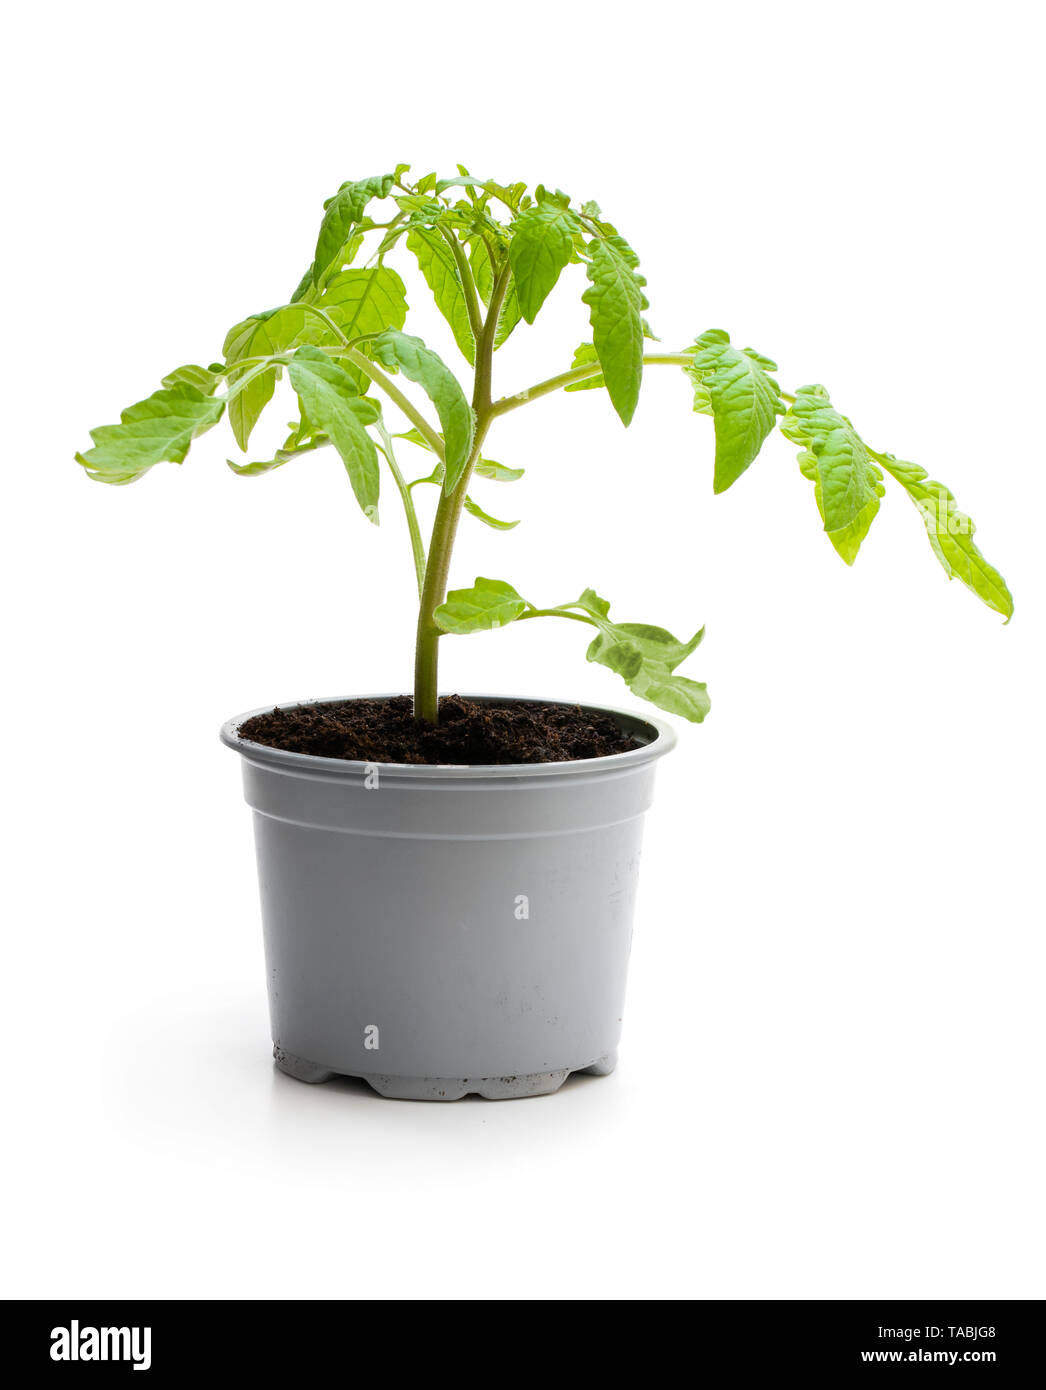 Plant de tomate en pot isolé sur fond blanc Banque D'Images